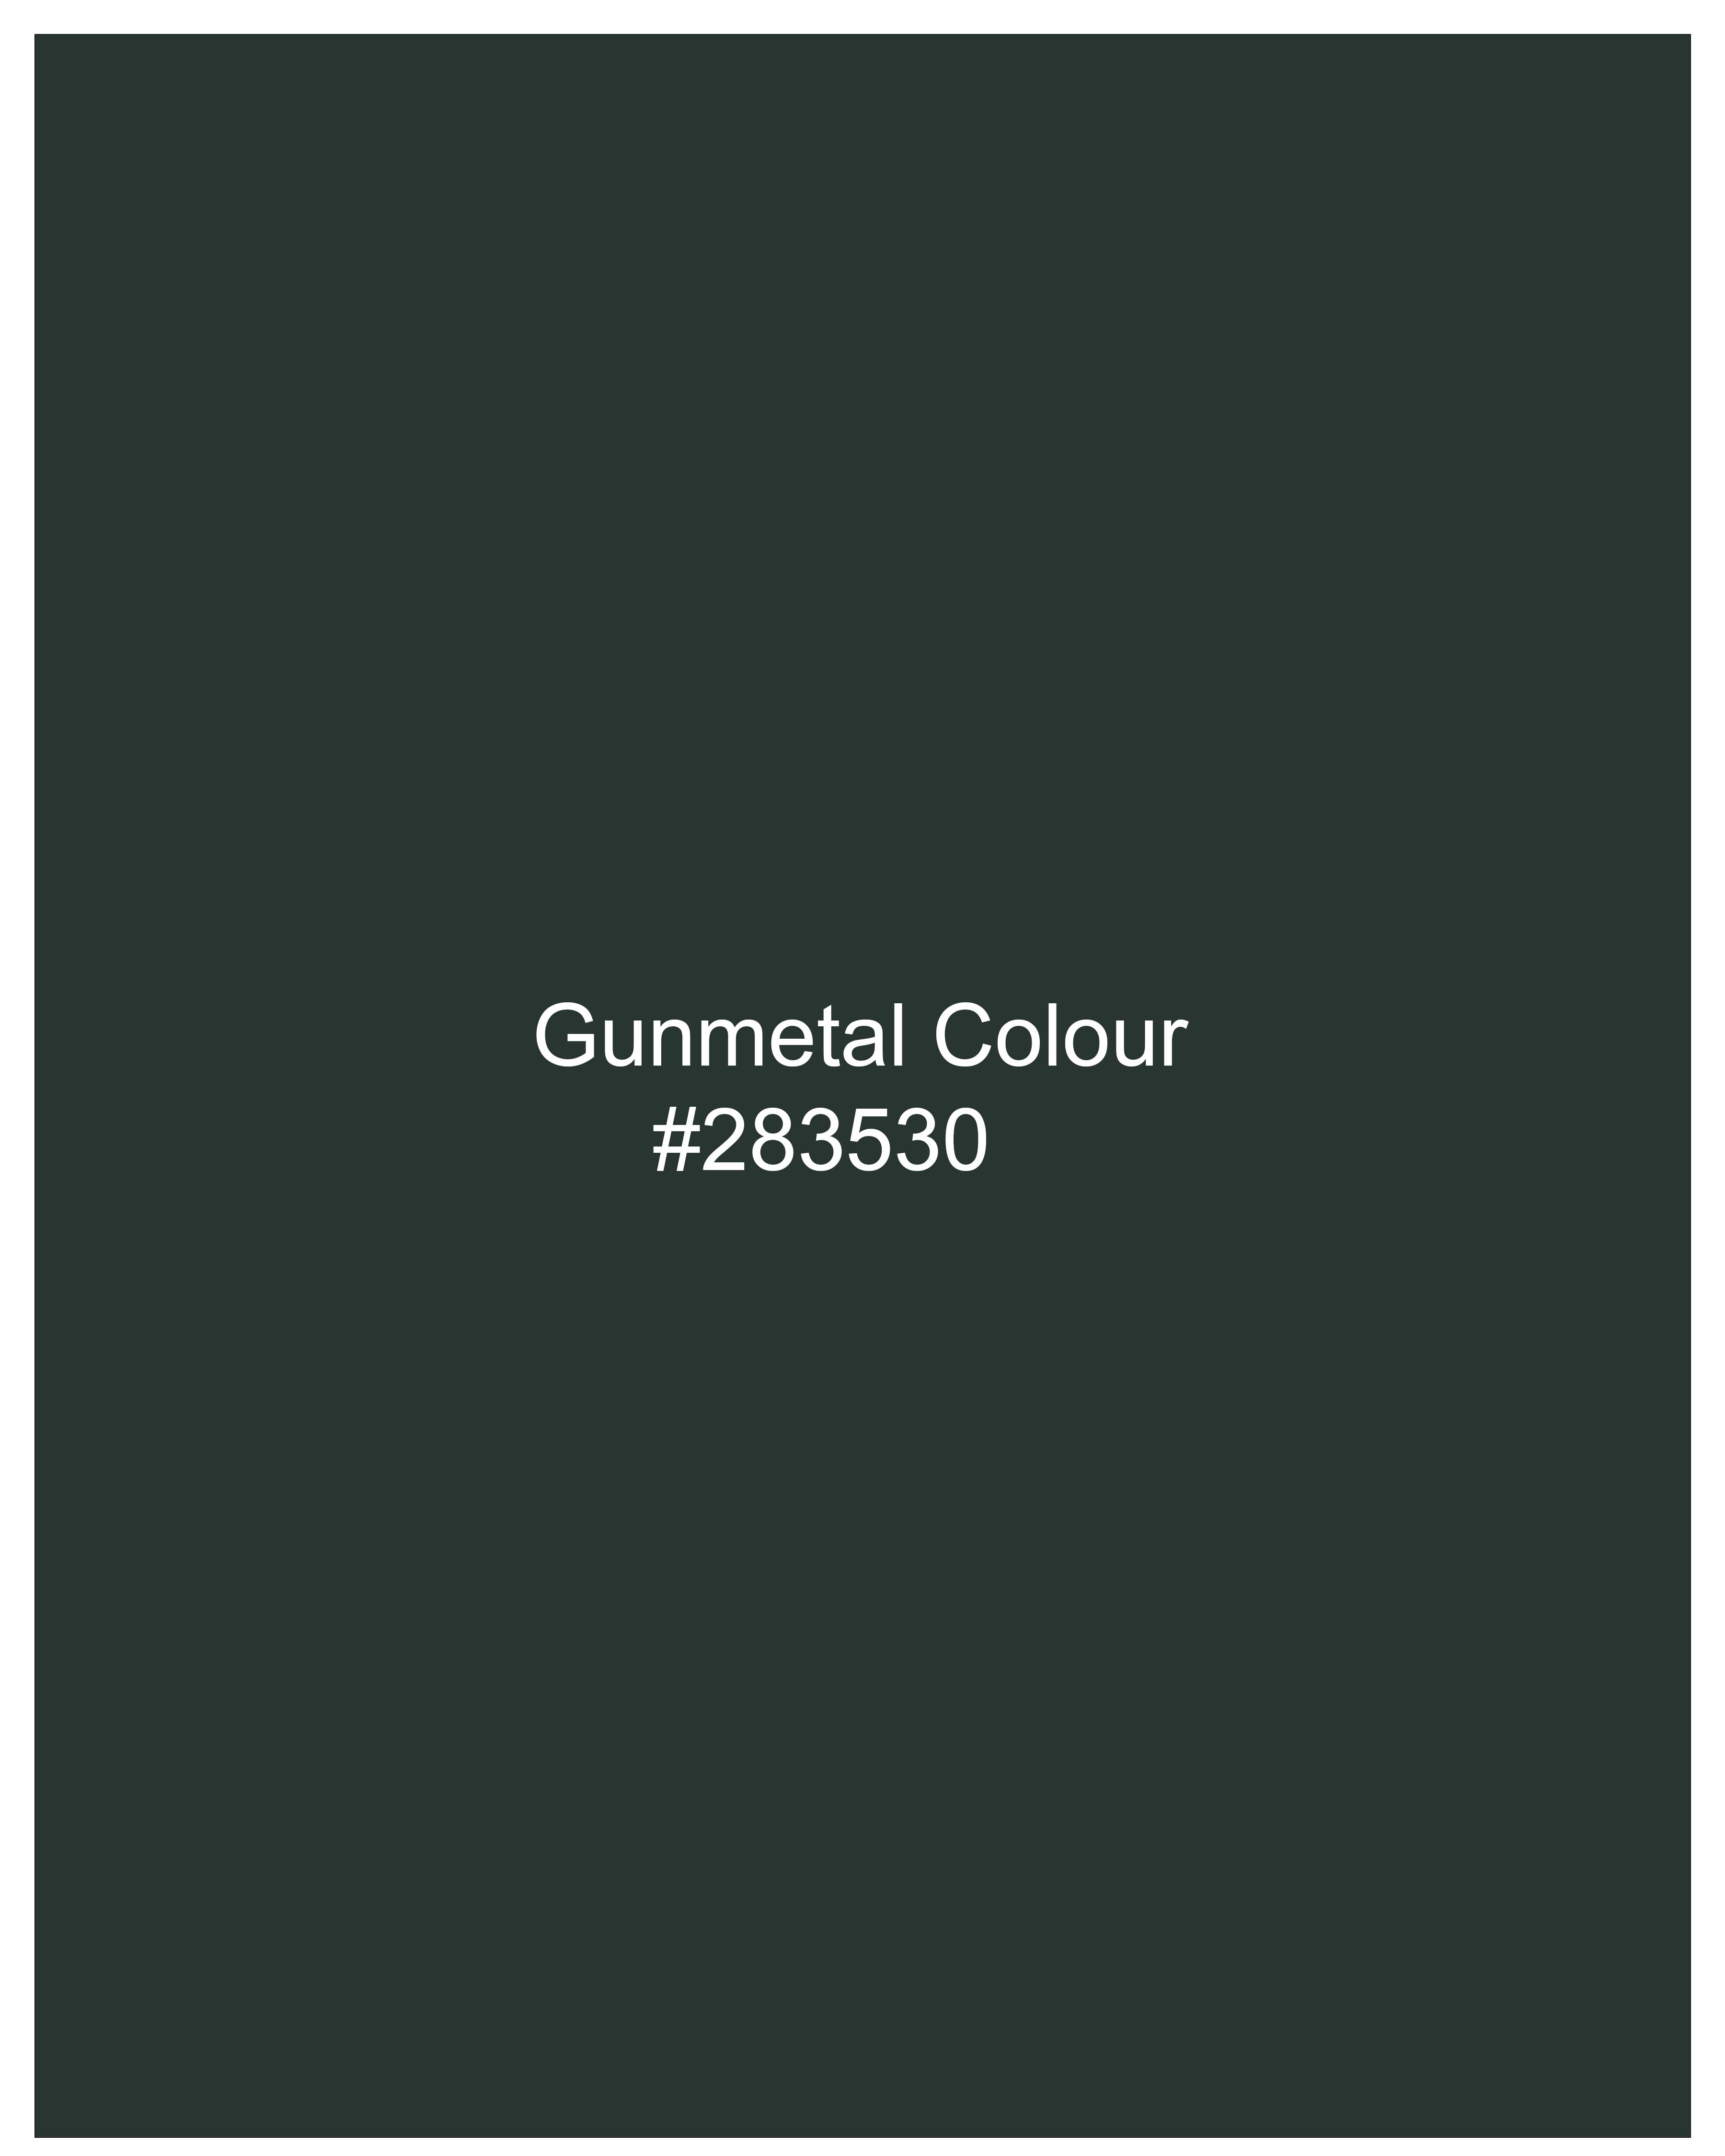 Gunmetal Green Plaid Pant T2326-28, T2326-30, T2326-32, T2326-34, T2326-36, T2326-38, T2326-40, T2326-42, T2326-44